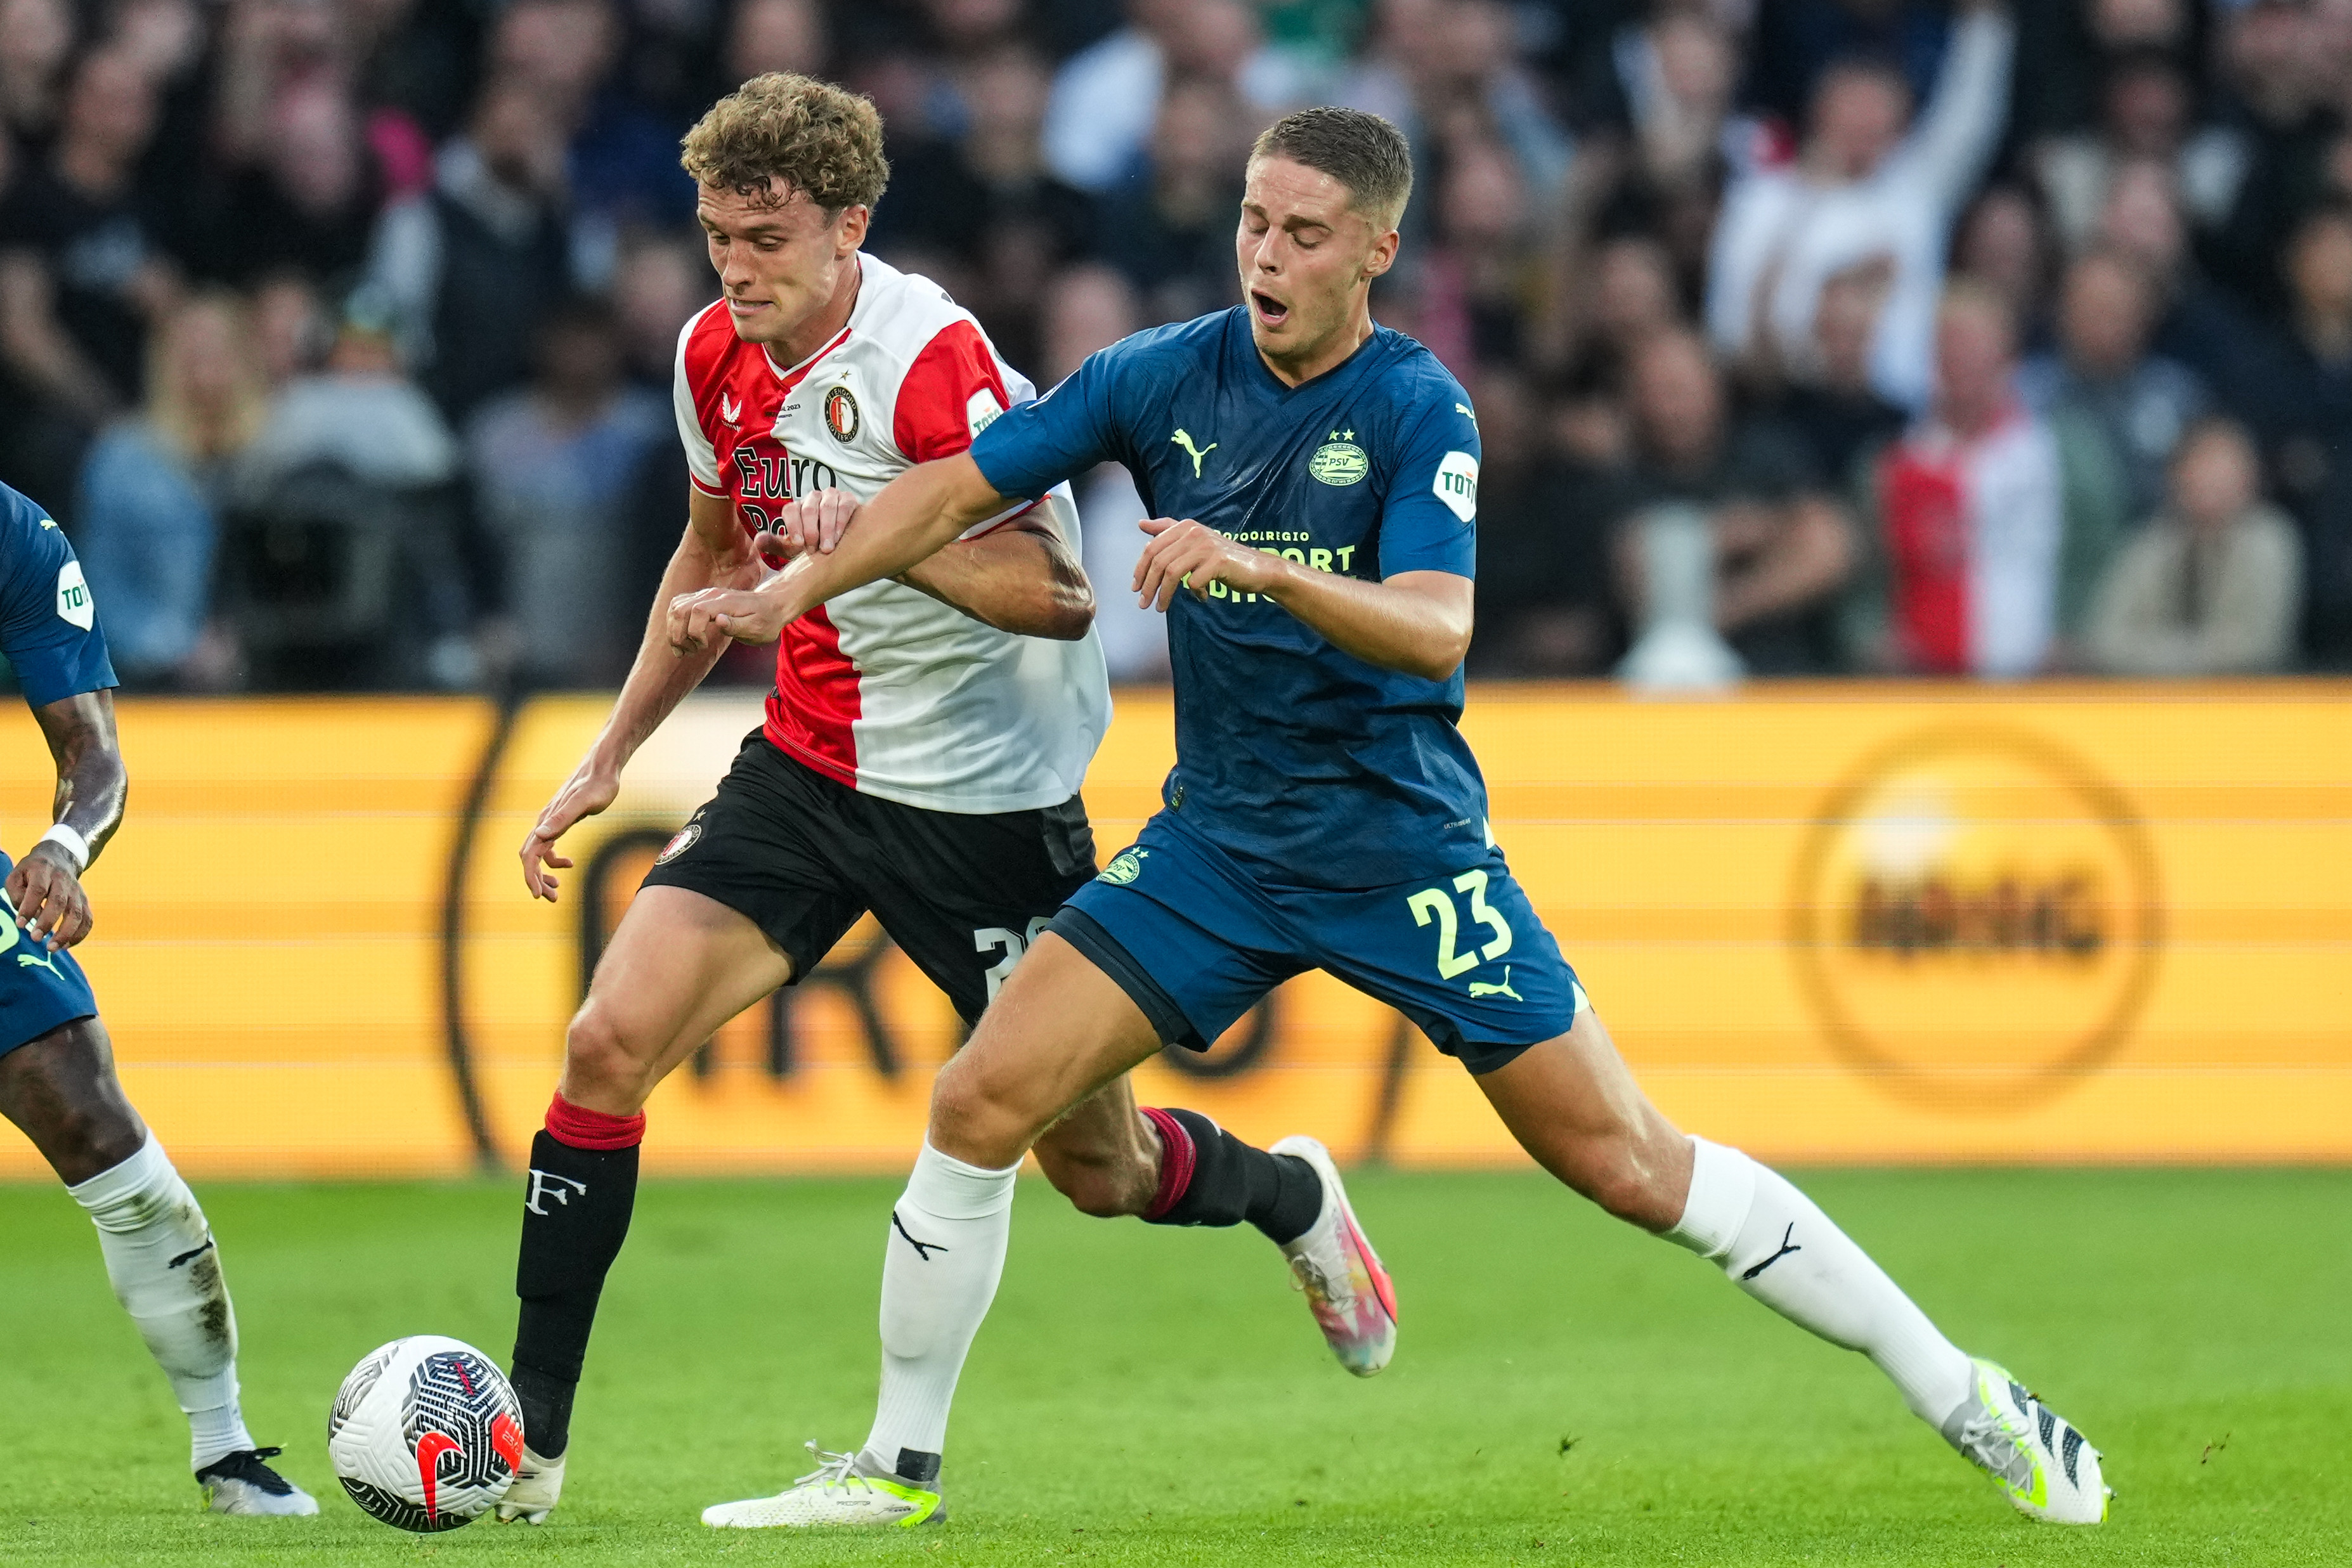 Feyenoord - PSV • 1-2 [FT]